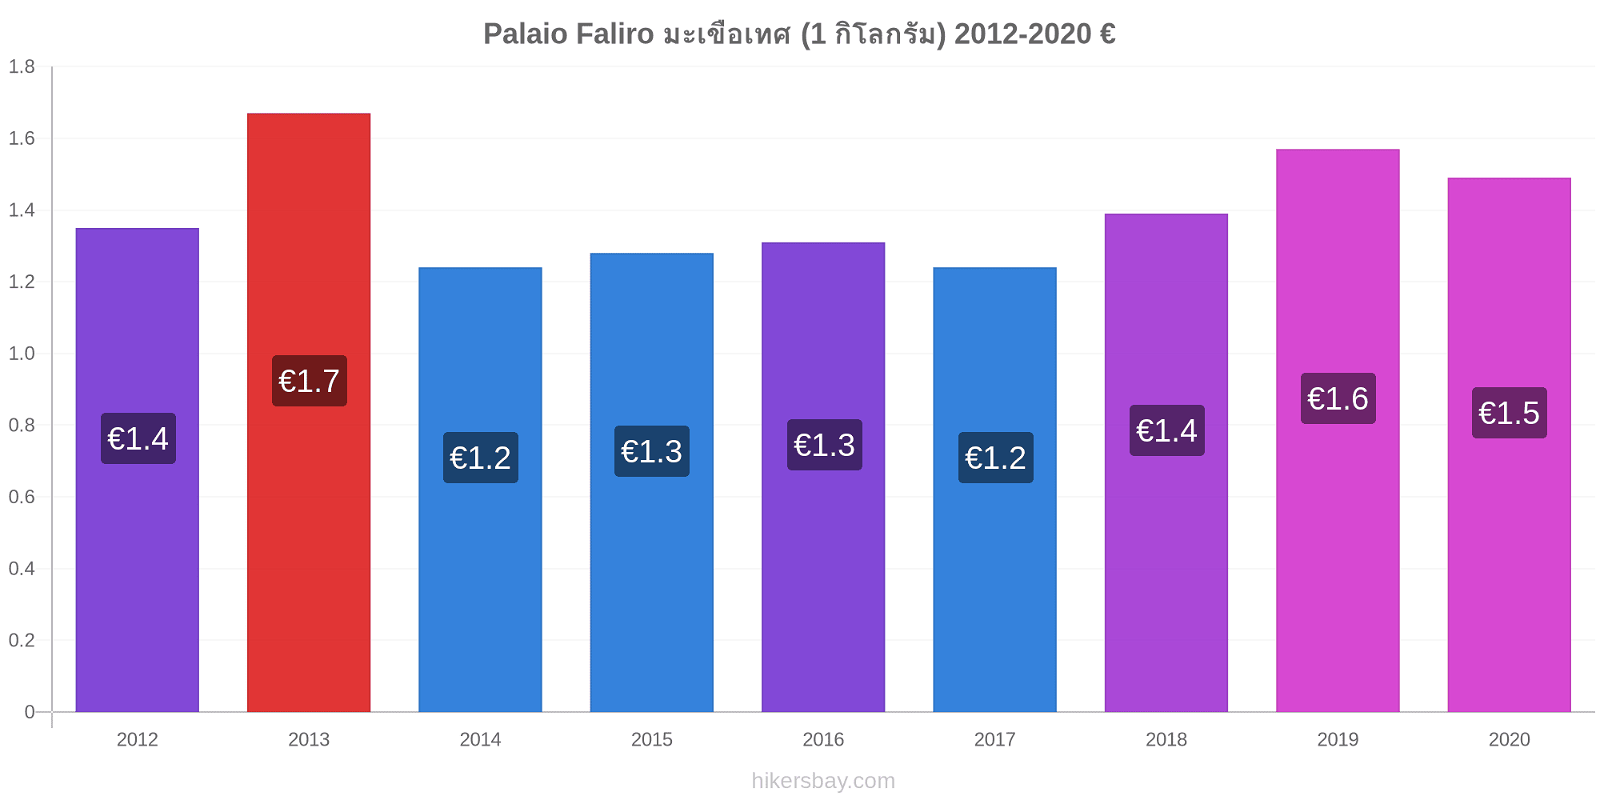 Palaio Faliro การเปลี่ยนแปลงราคา มะเขือเทศ (1 กิโลกรัม) hikersbay.com